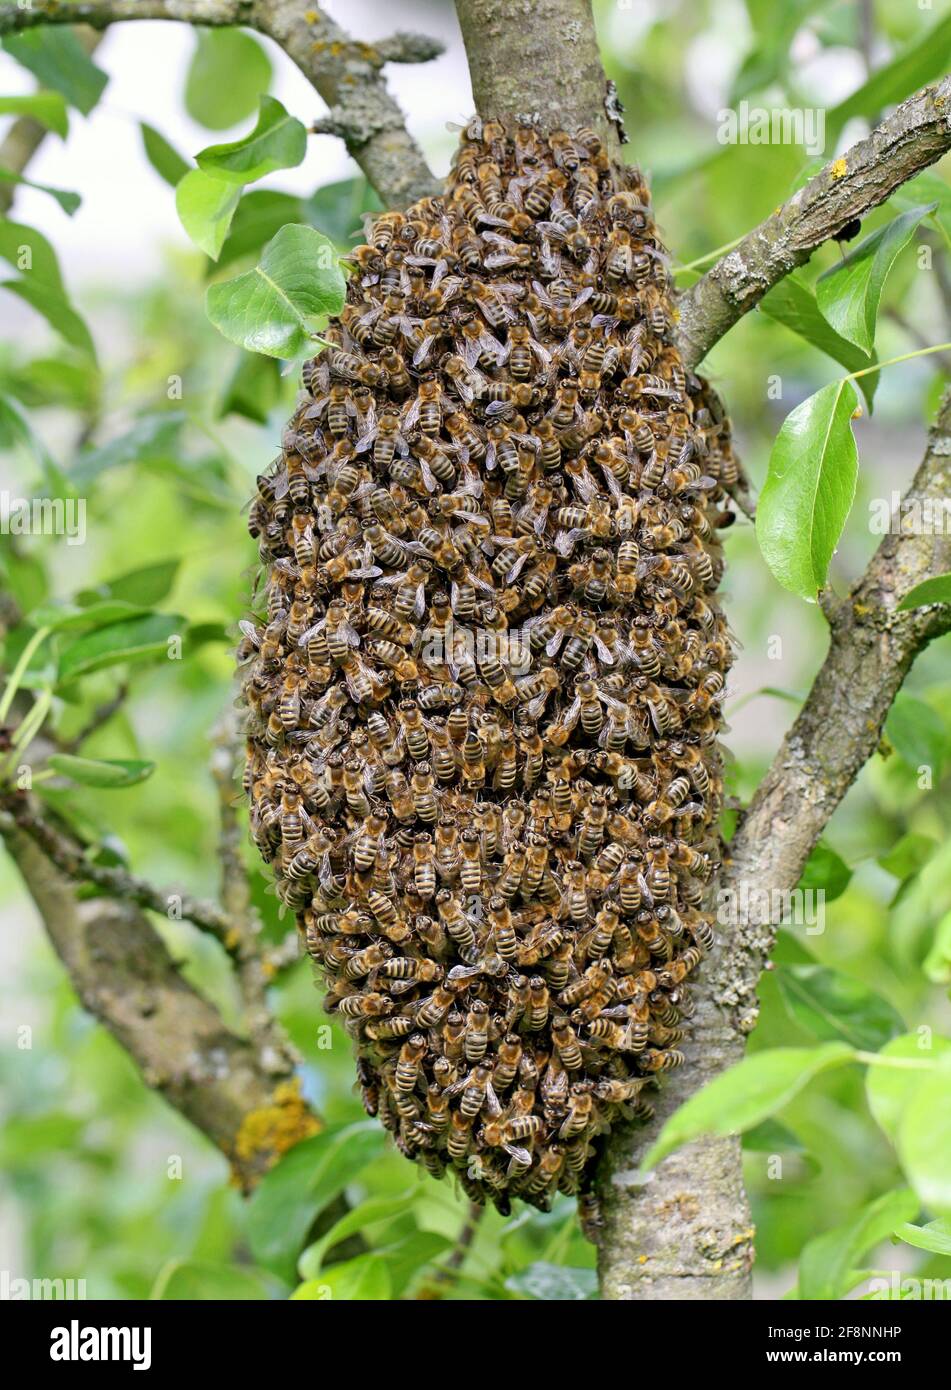 Un enjambre de abejas de miel europeas colgando en manzano tronco en forma de uva Foto de stock